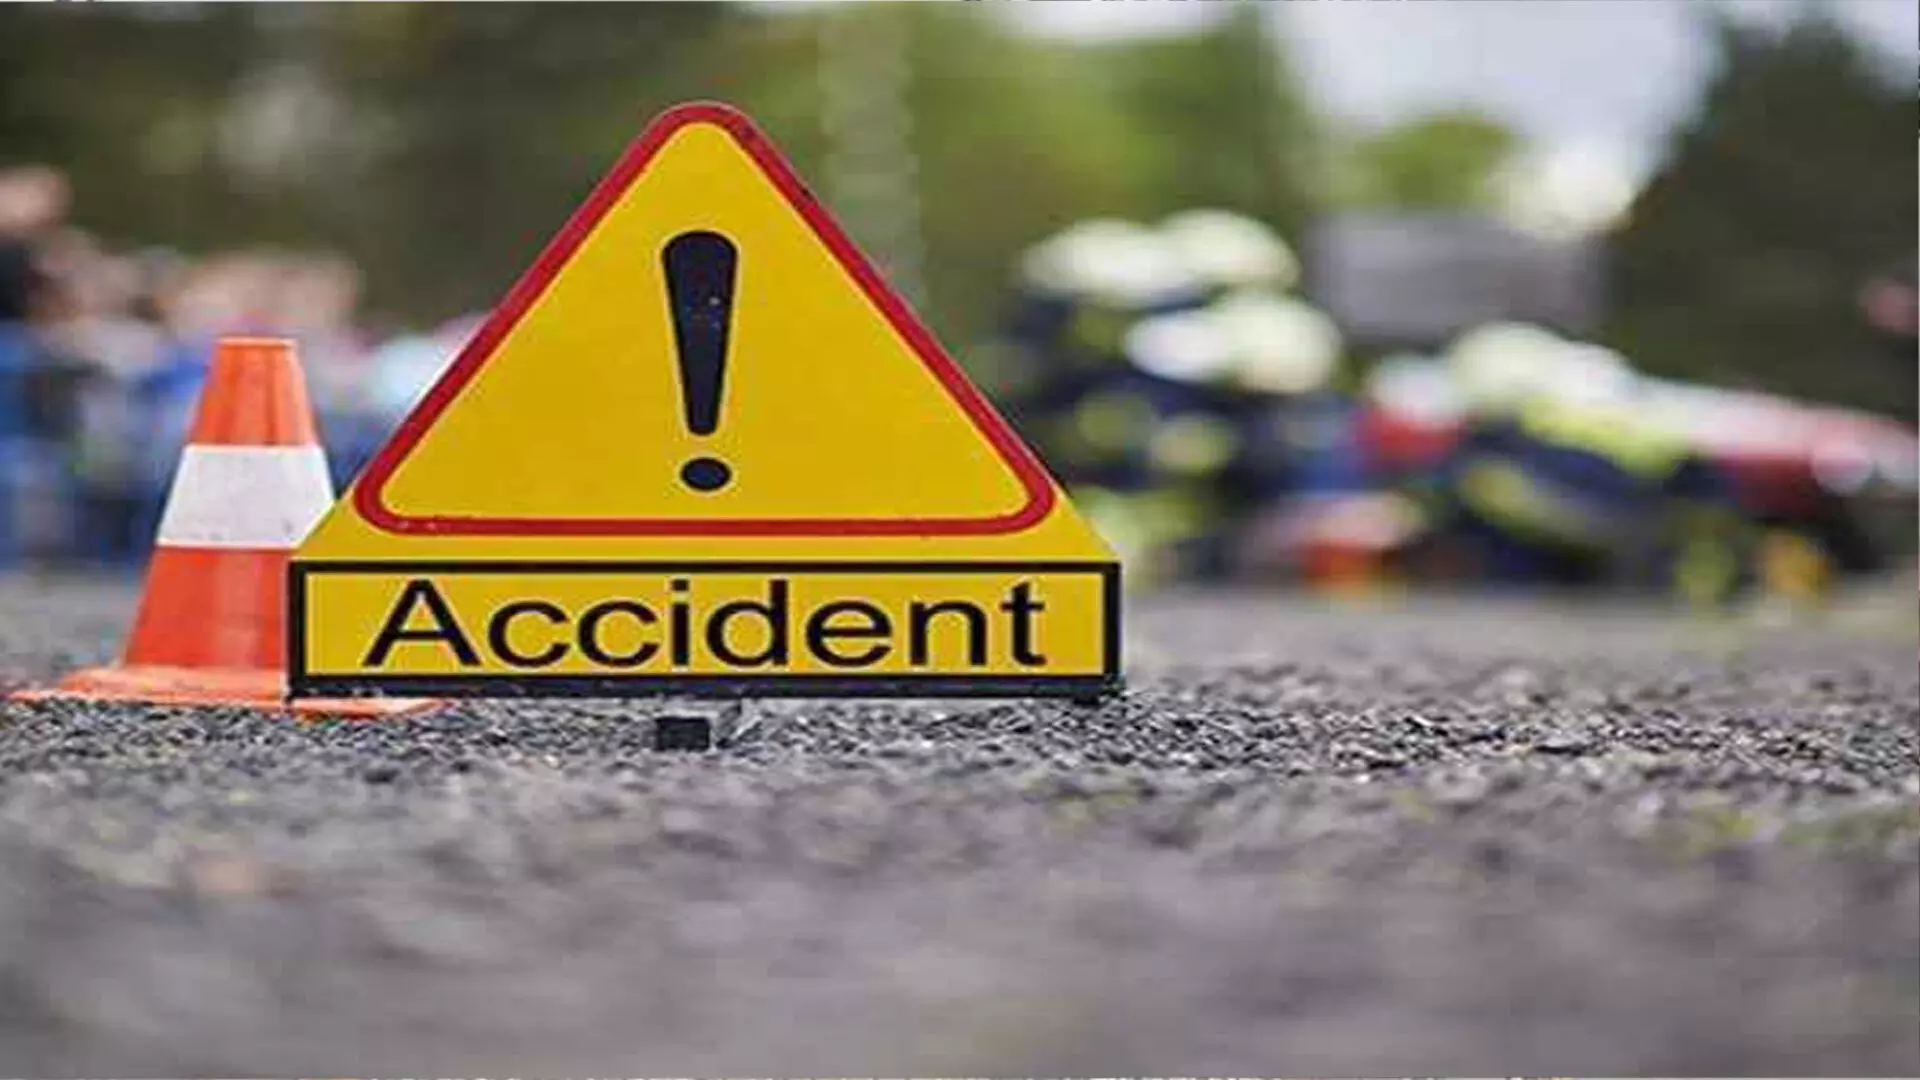 Rohru में कार दुर्घटना में 2 की मौत, 3 घायल